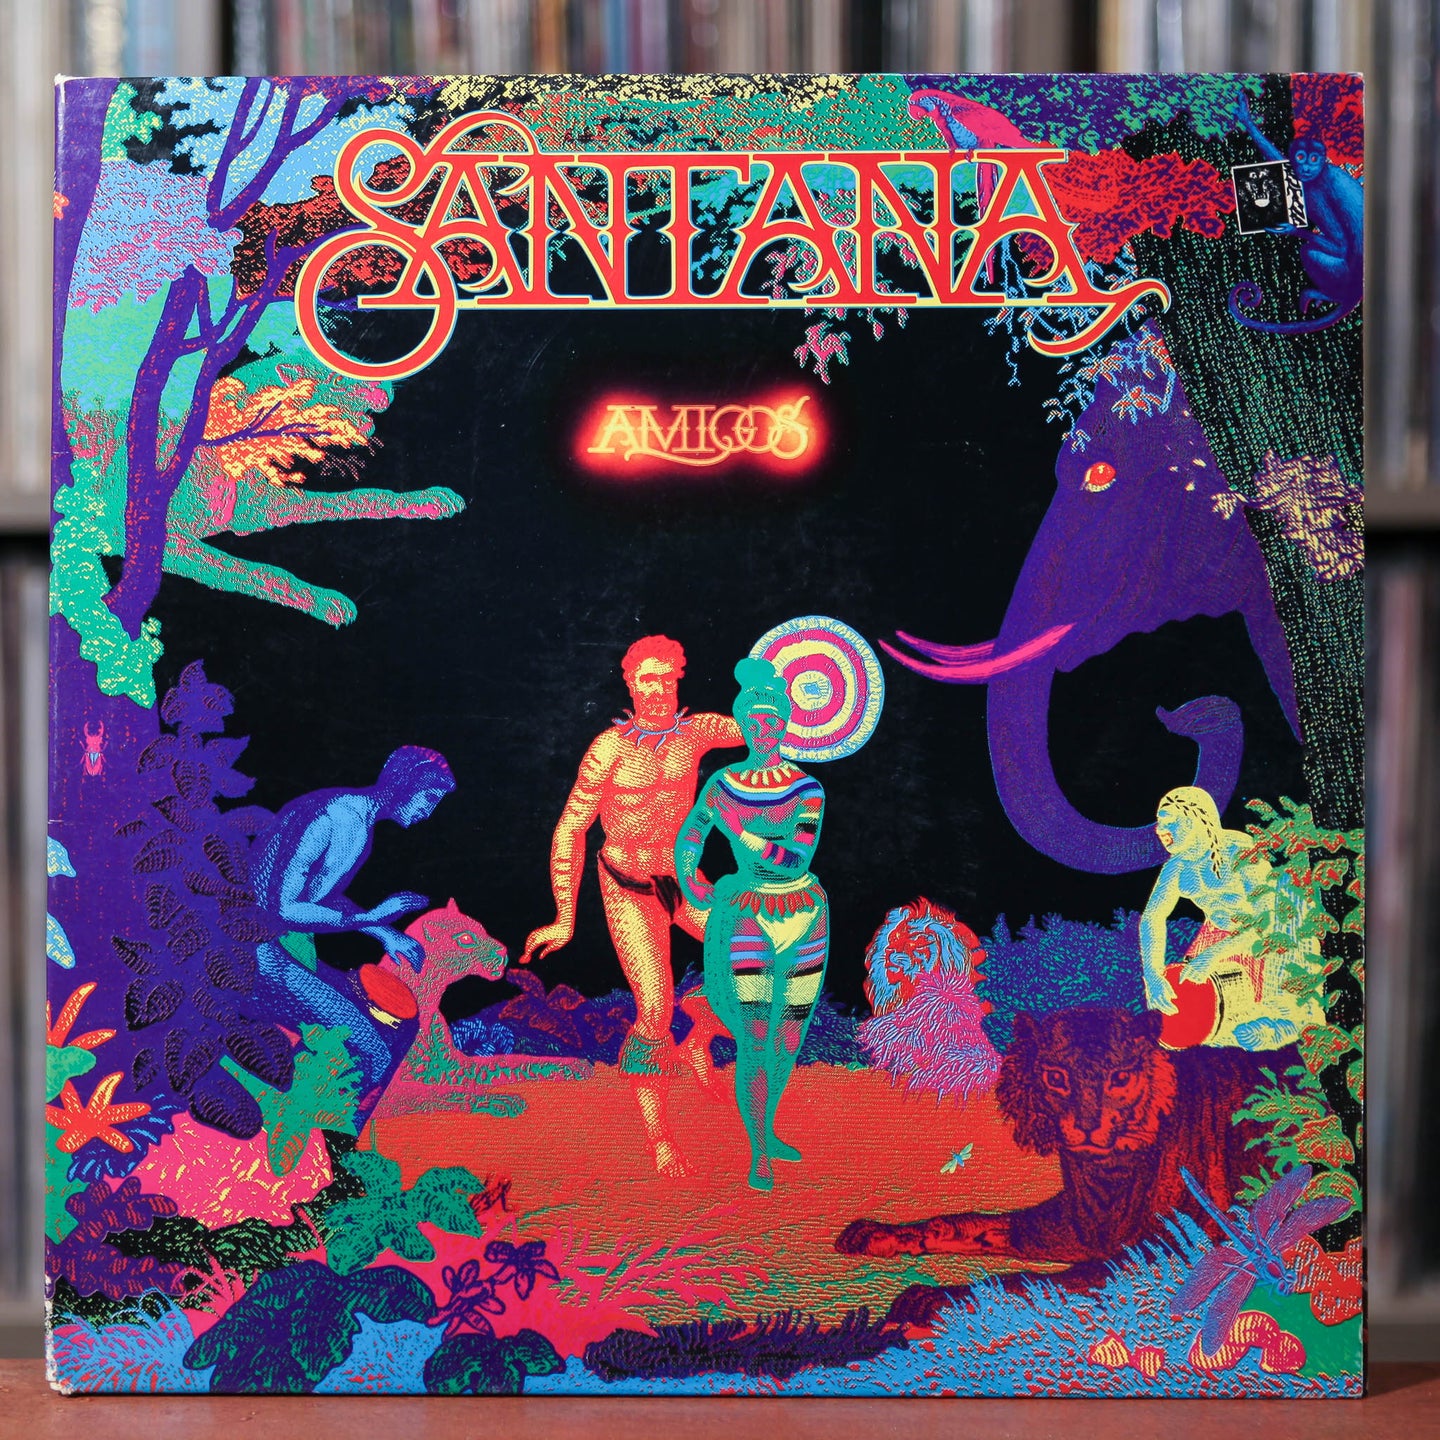 Santana - Amigos - 1976 Columbia VG+/VG+